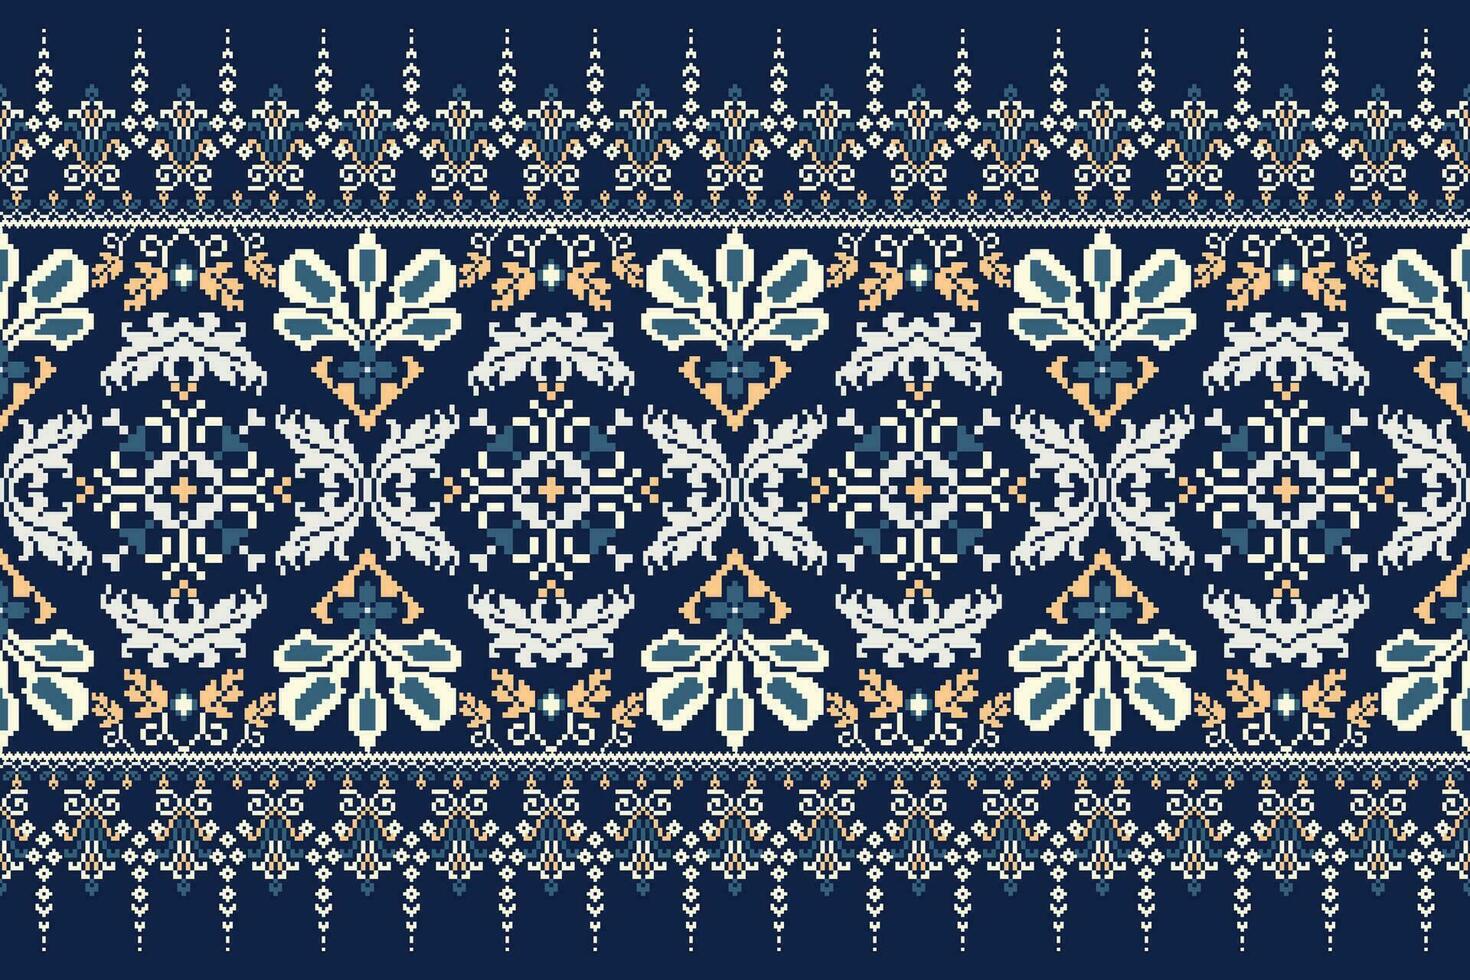 floral cruzar puntada bordado en Armada azul fondo.geometrico étnico oriental modelo tradicional.azteca estilo resumen vector ilustración.diseño para textura,tela,ropa,envoltura,decoración.